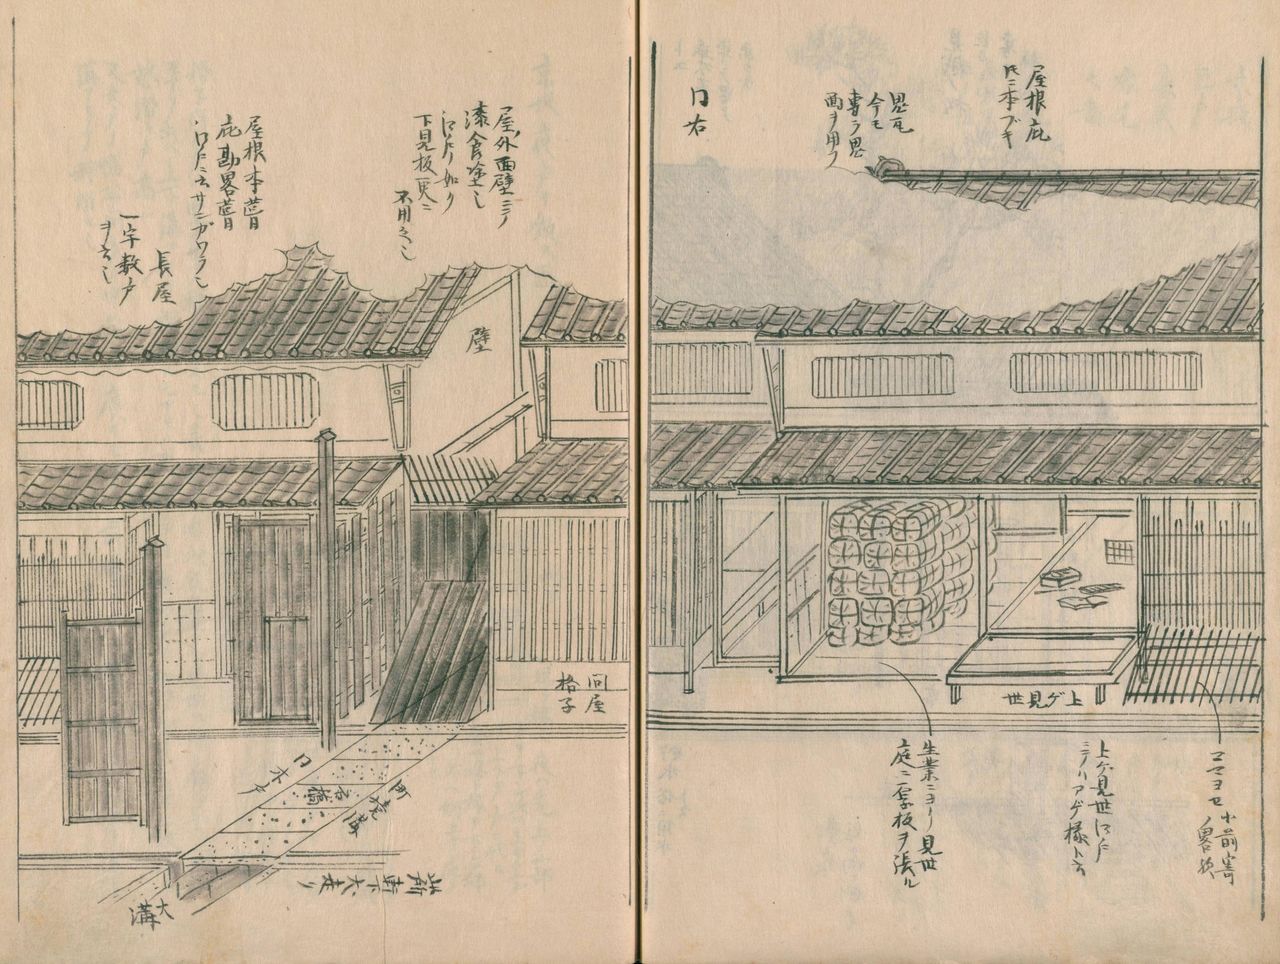 Structure caractéristique d’une maison de commerce à Kyoto, fixée depuis l’époque de Muromachi (14e-16e s.). La porte de bois sur la gauche marque l’entrée des appartements privés du maître de maison, de plain-pied.